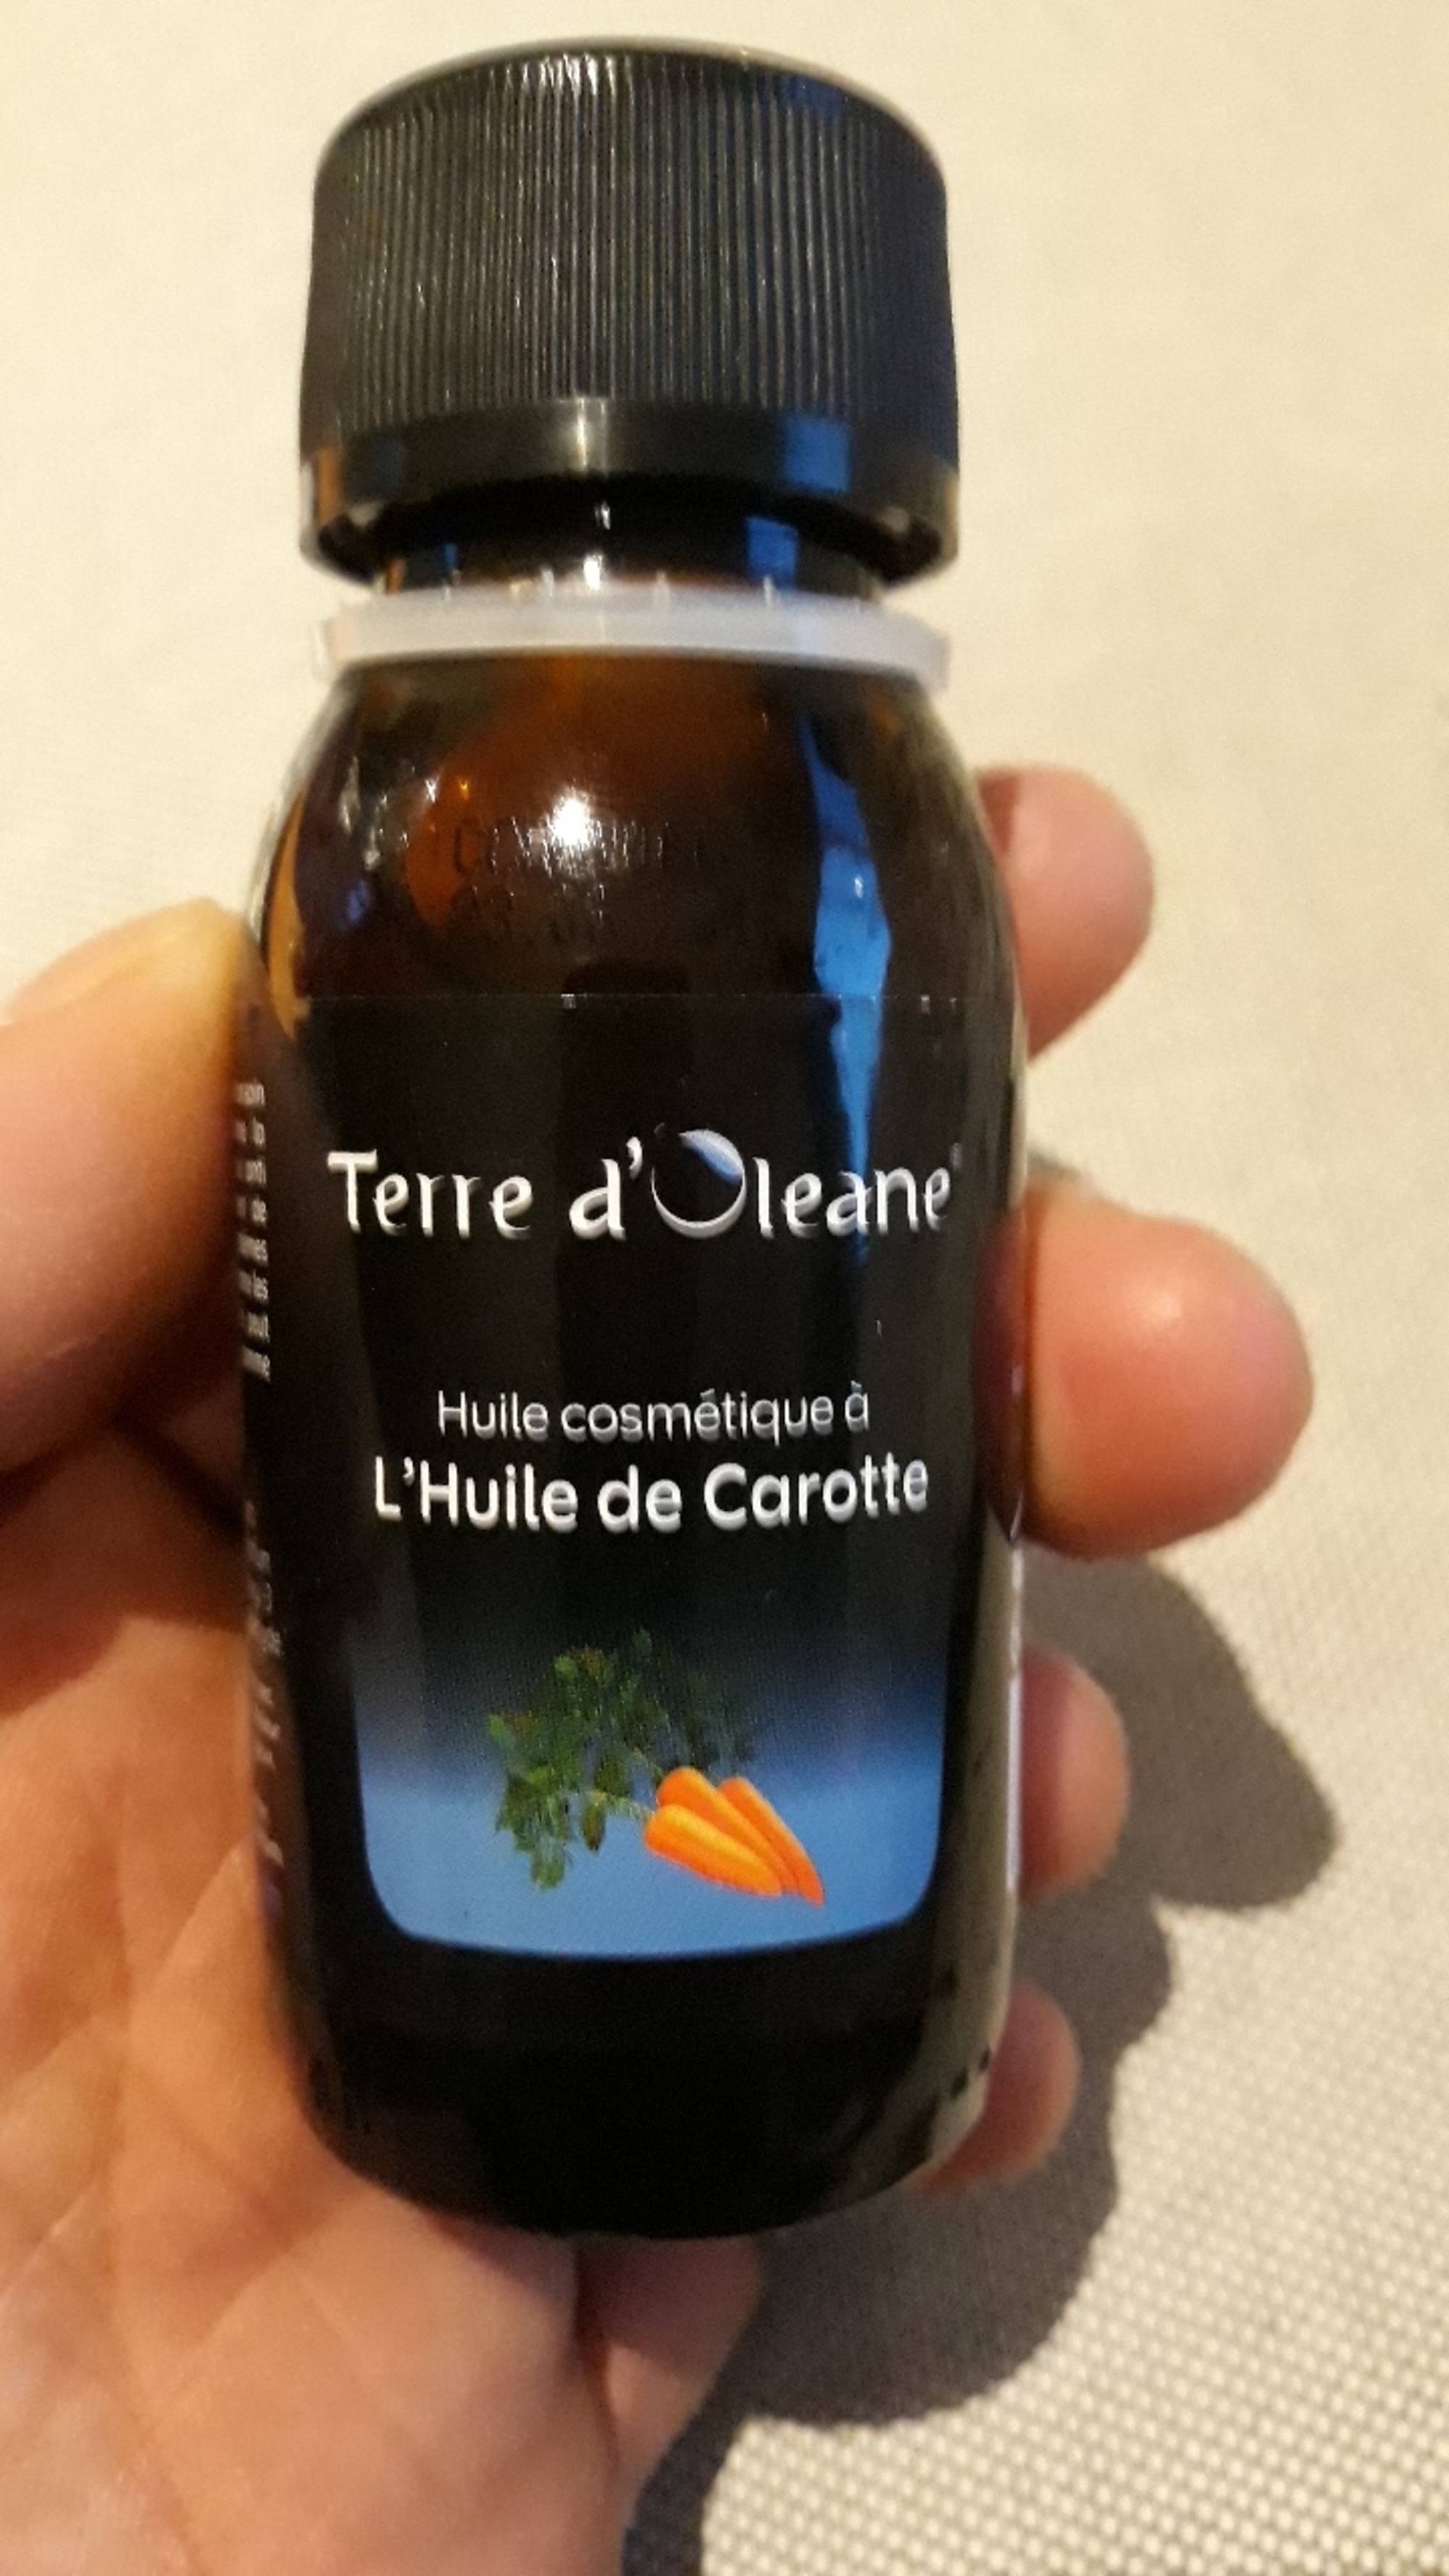 TERRE D'OLEANE - Huile cosmétique à l'huile de carotte